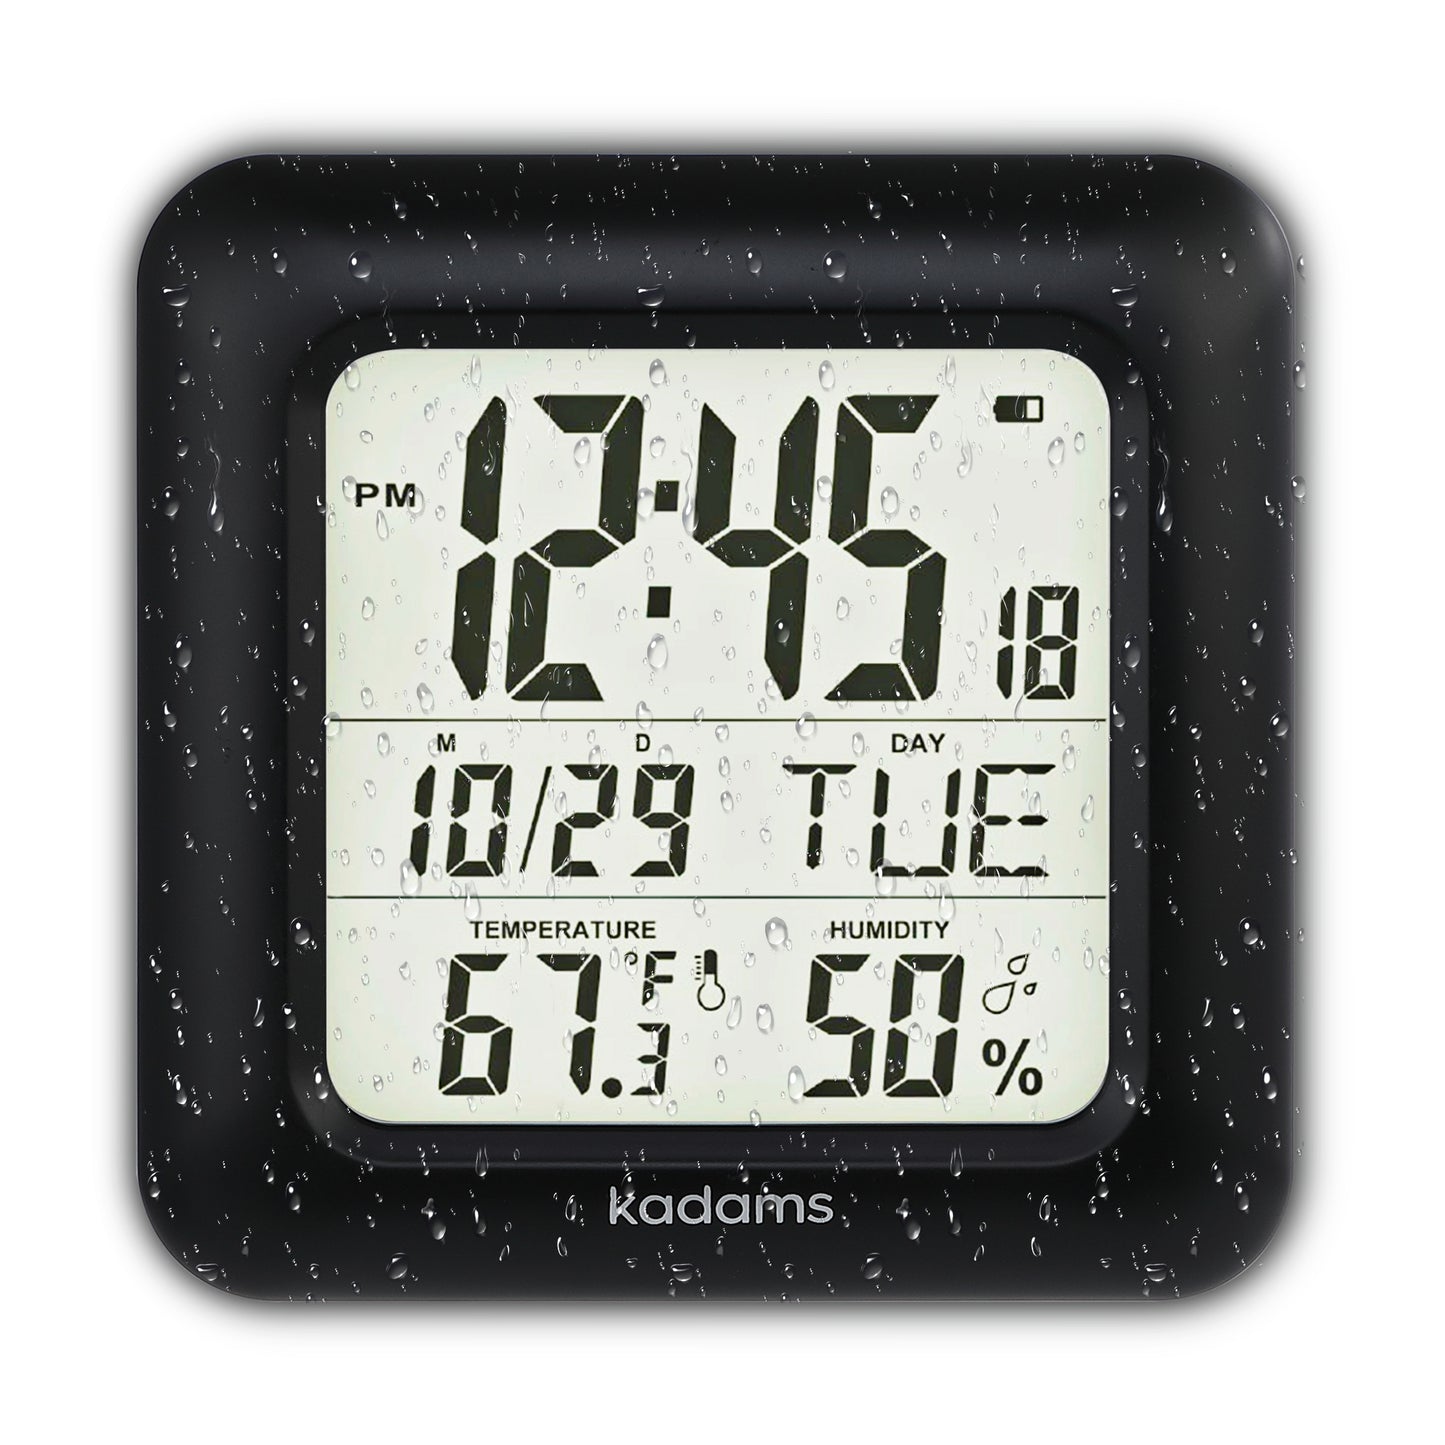 Bathroom  Clock Water Resistant - Temperature & Humidity Calendar (Silver)